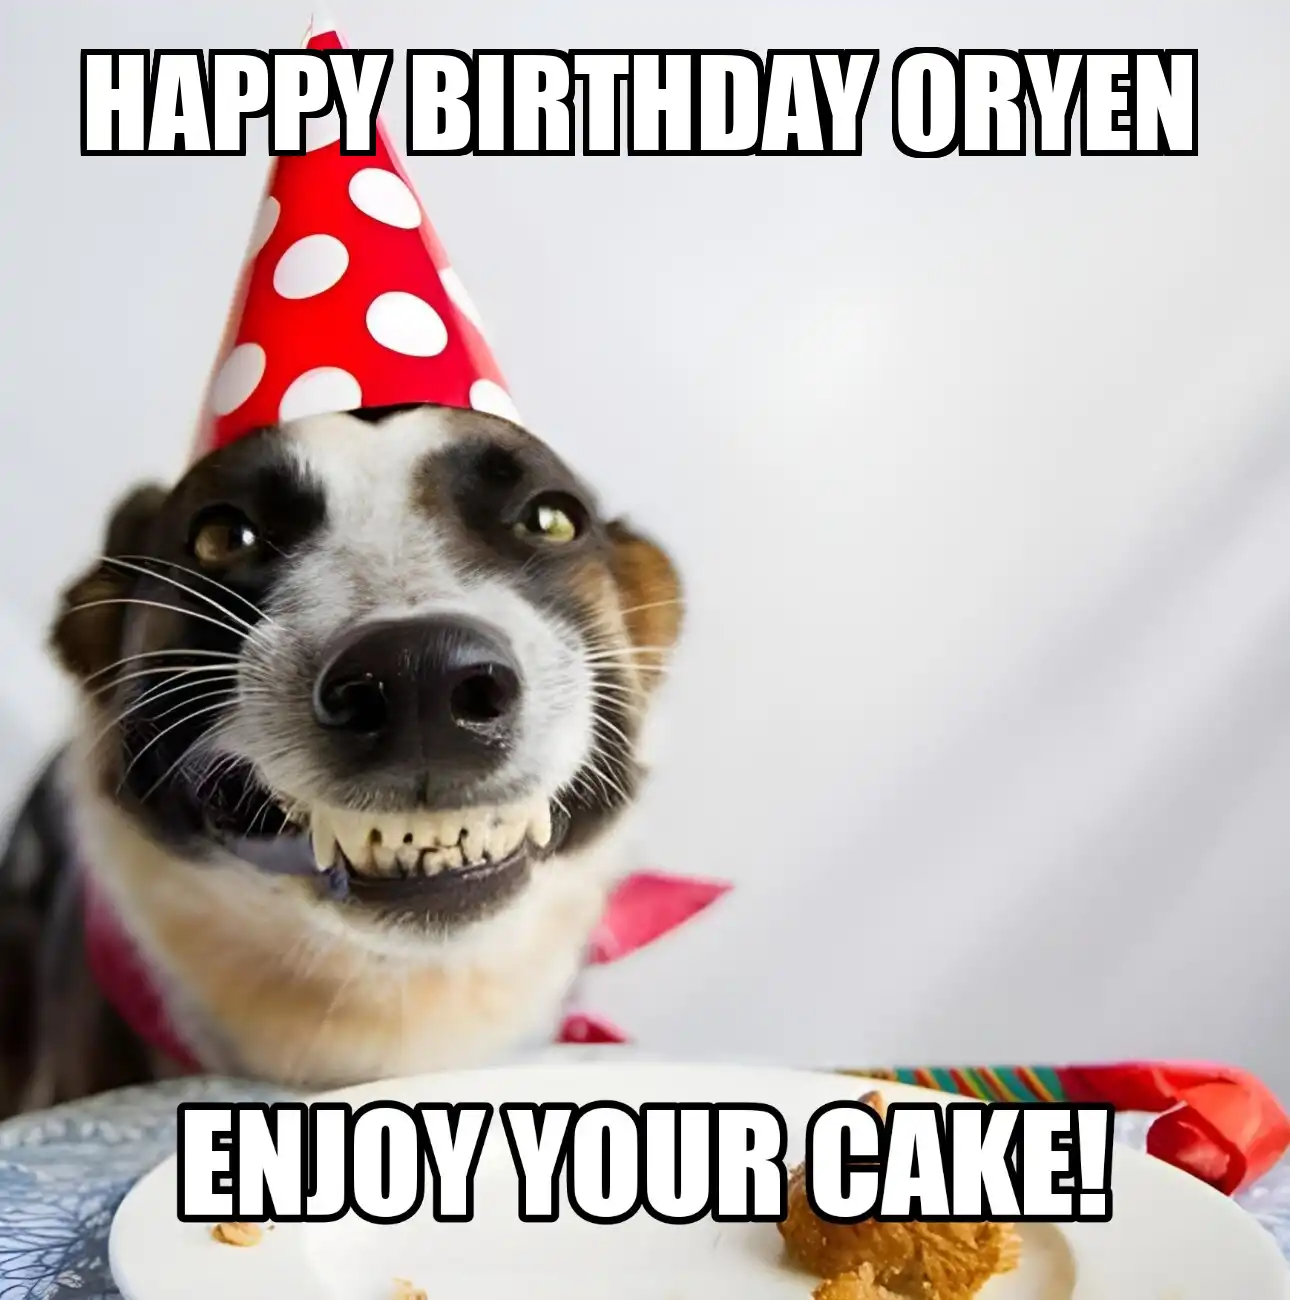 Happy Birthday Oryen Enjoy Your Cake Dog Meme